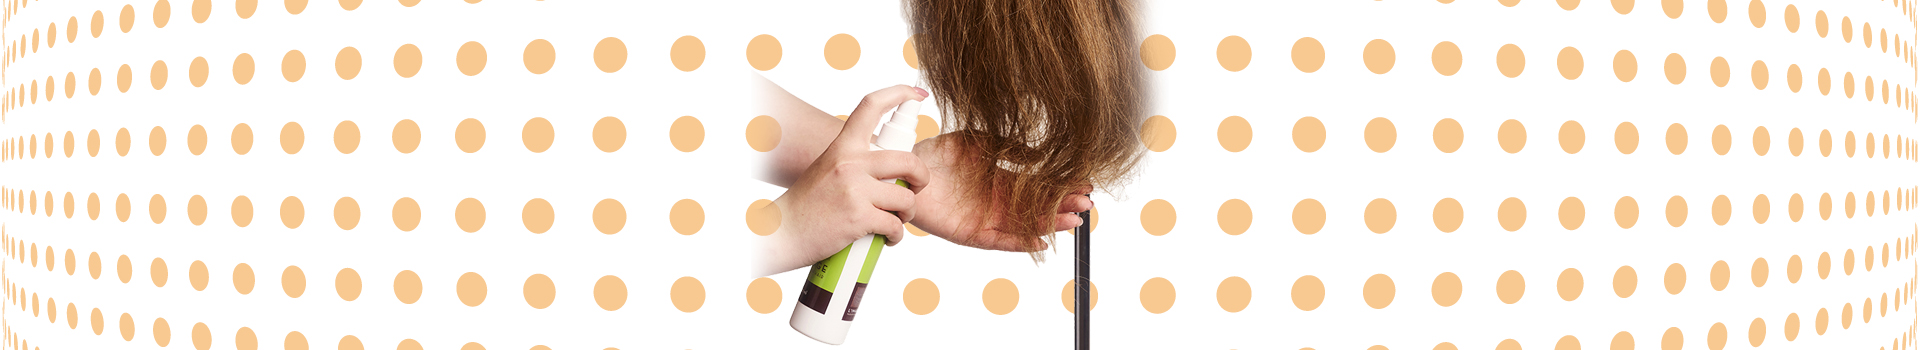 Haarspitzen einer Frisierpuppe werden mit Sprühpflege behandelt